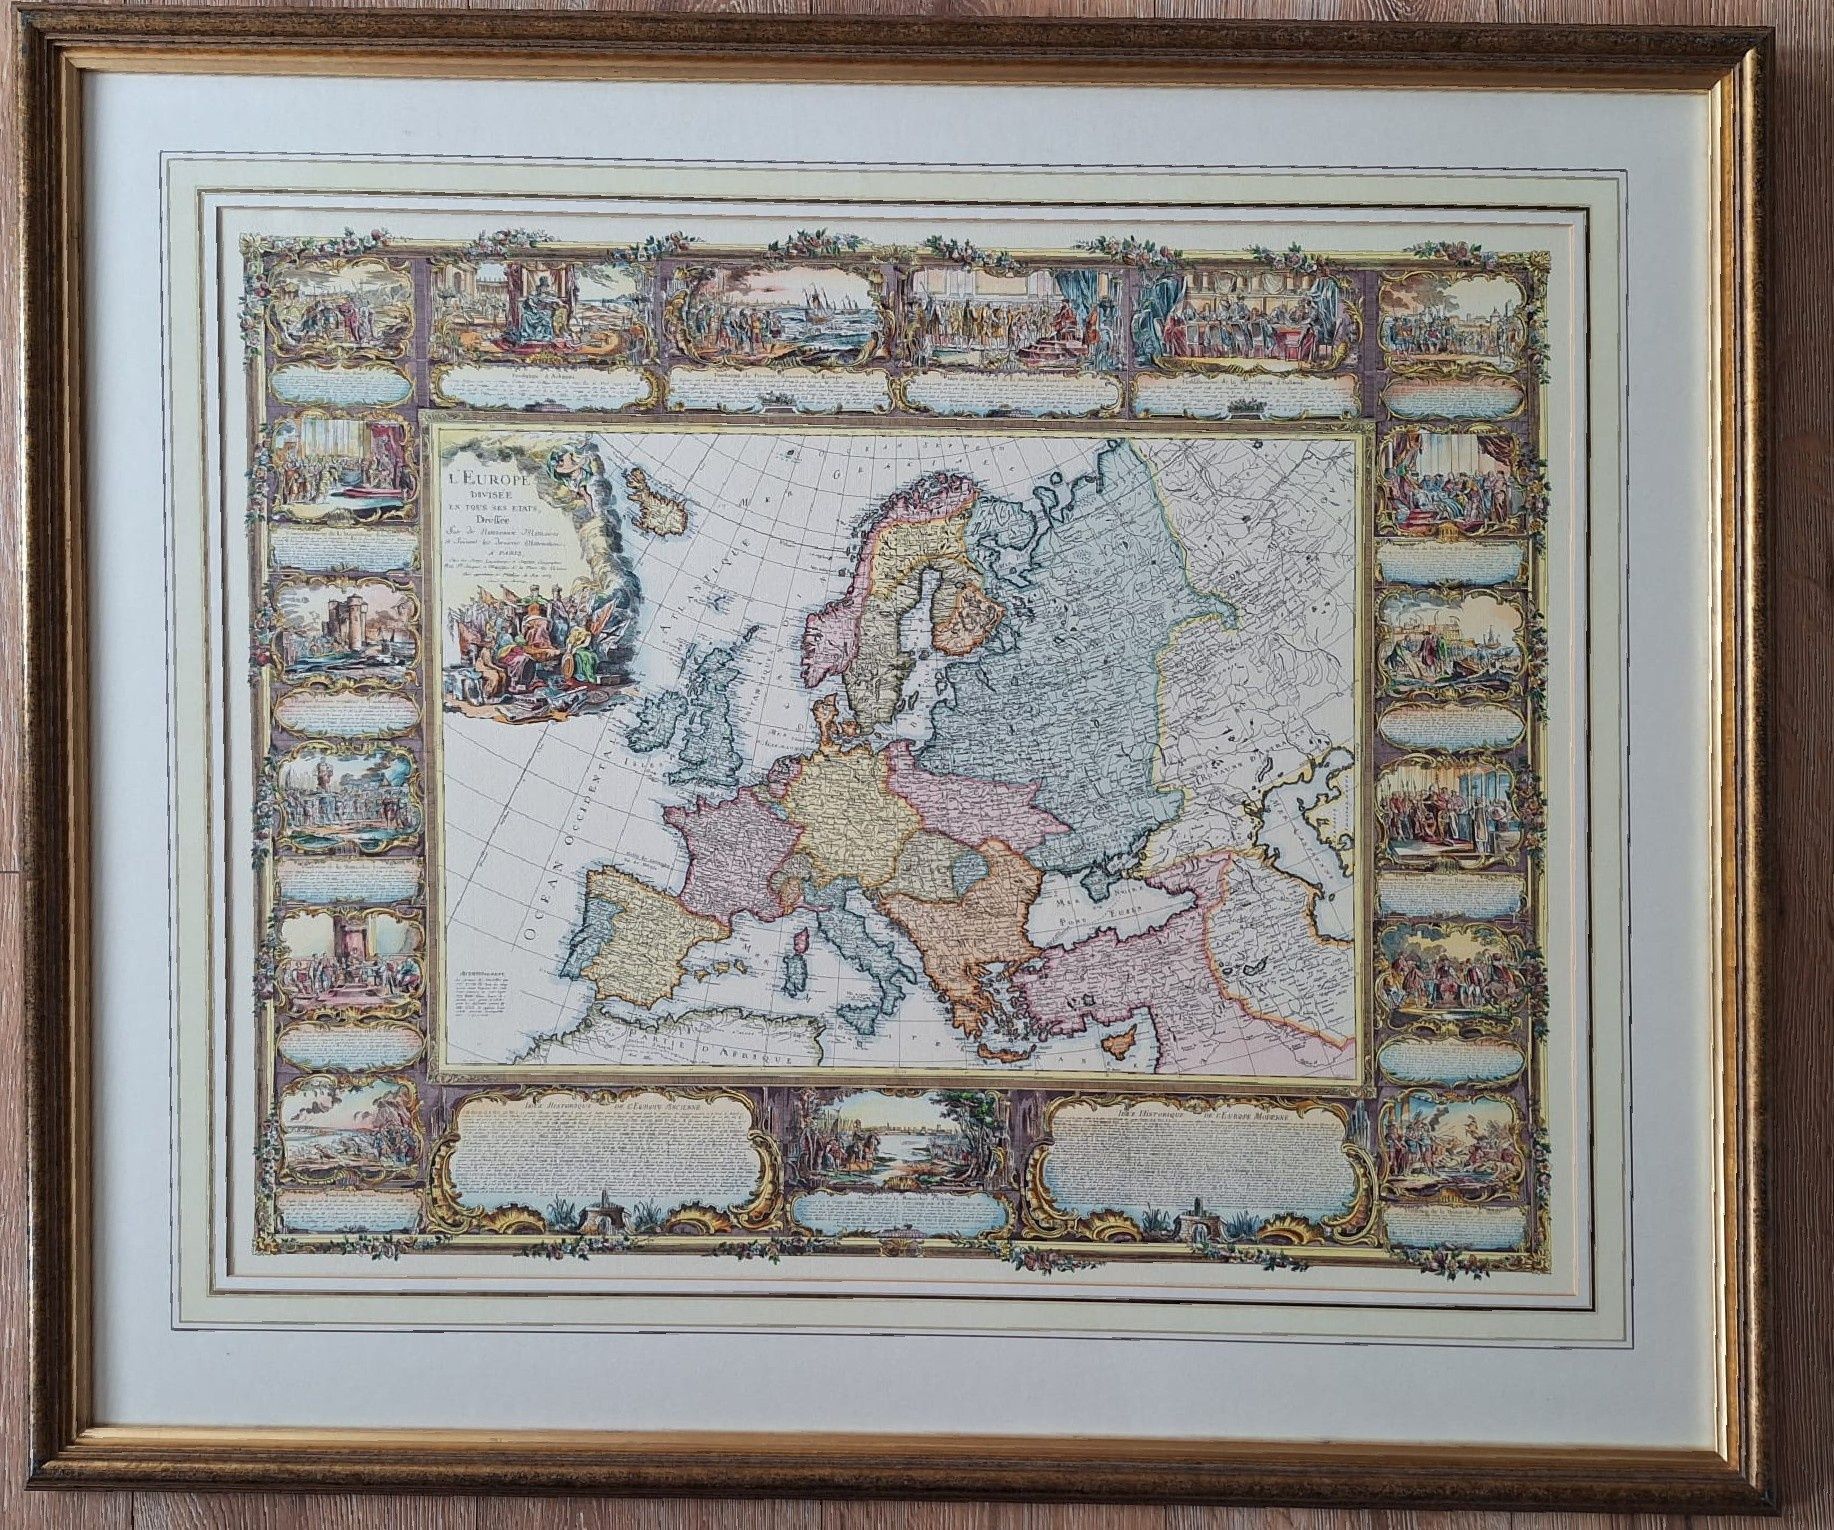 Reprodukcja francuskiej mapy Europy z 1754